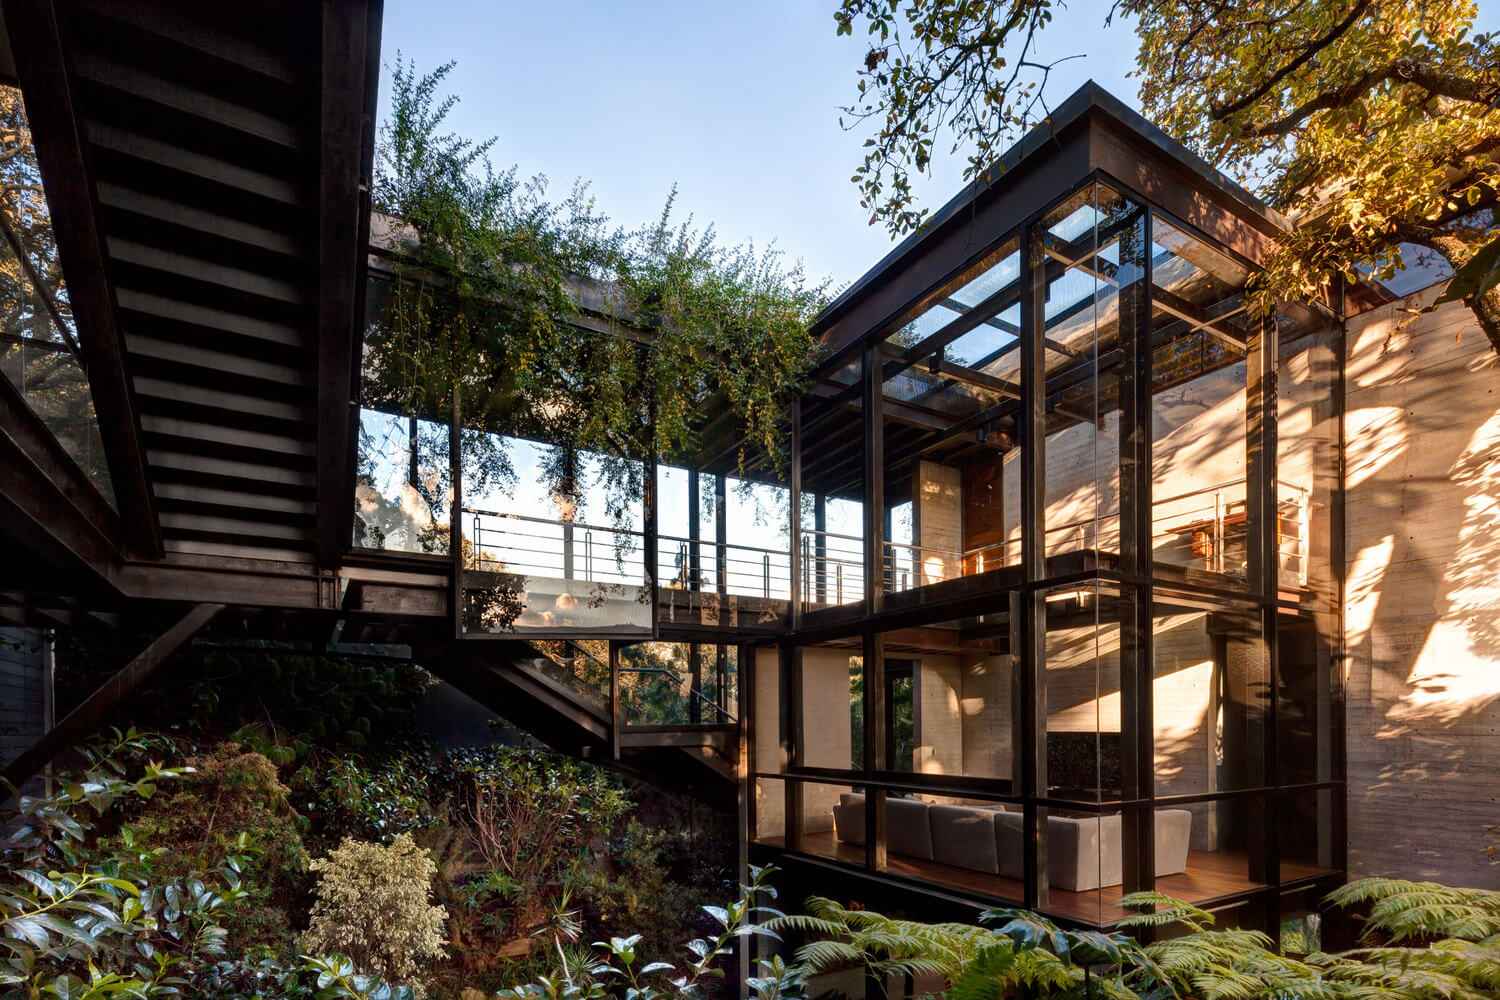 Casa no bosque na Cidade do México por Grupoarquitectura 004 Fachada + Metal + Vigas de + Vidros + Bosque